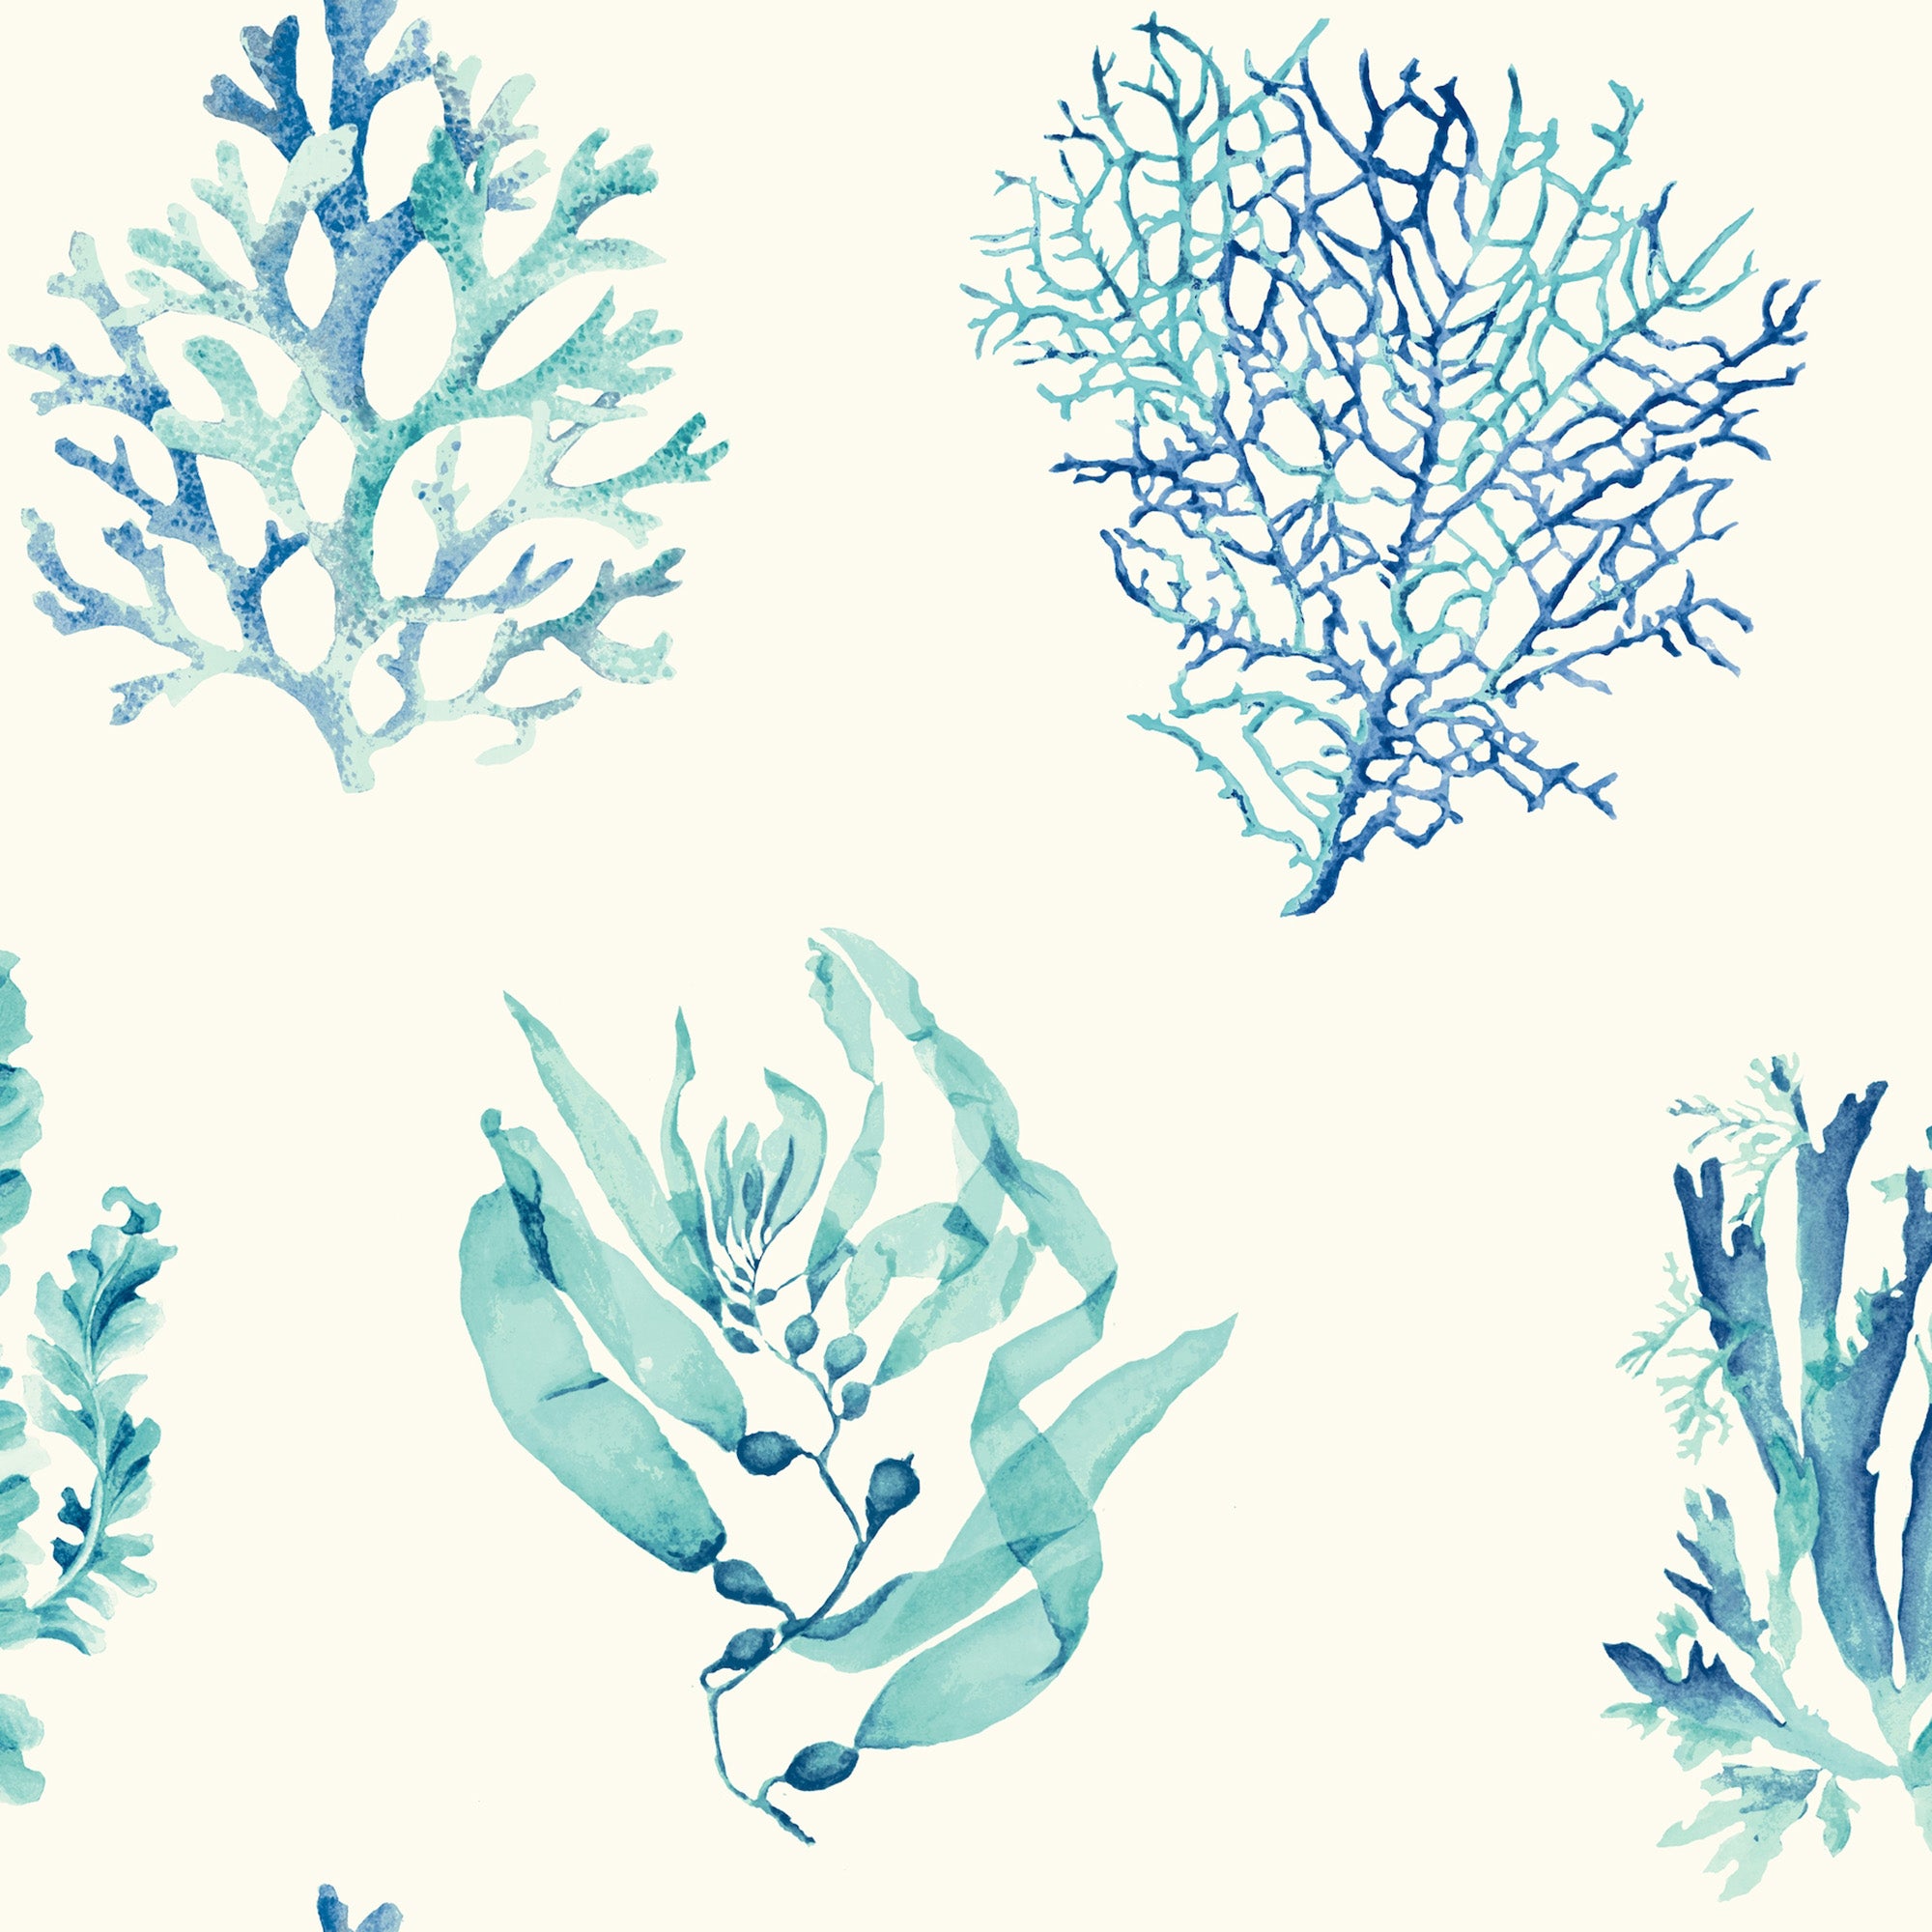 Seaweed Wallpapers